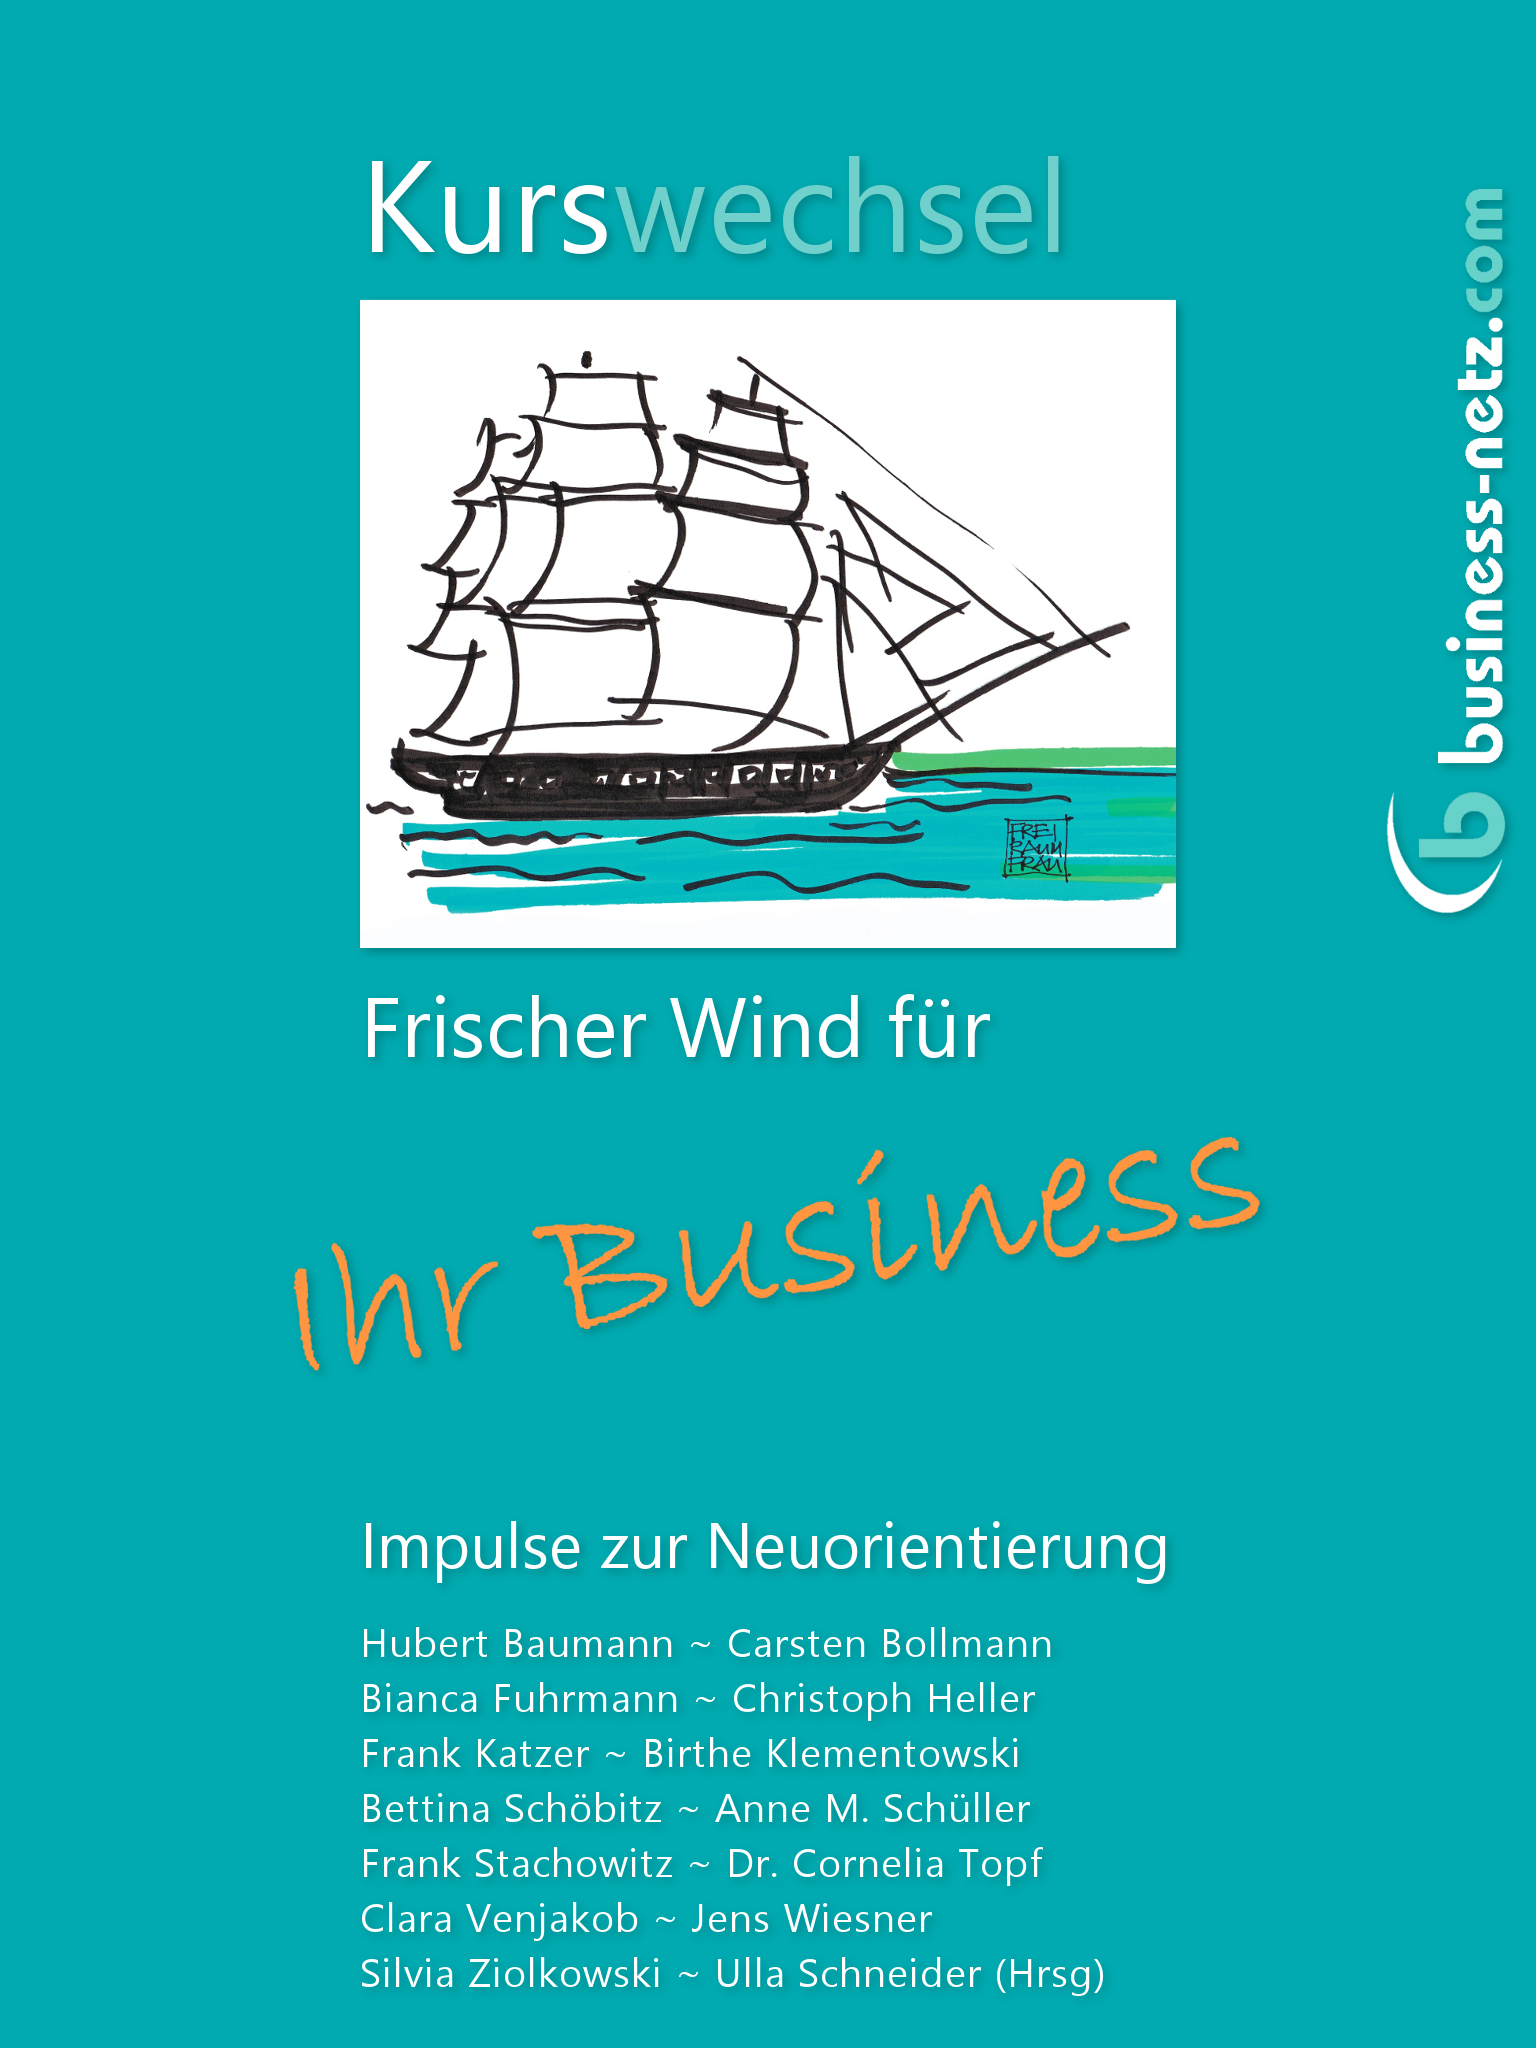 Kurswechsel - Frischer Wind für Ihr Business - Gemeinschaftsprojekt mit business-netz.com